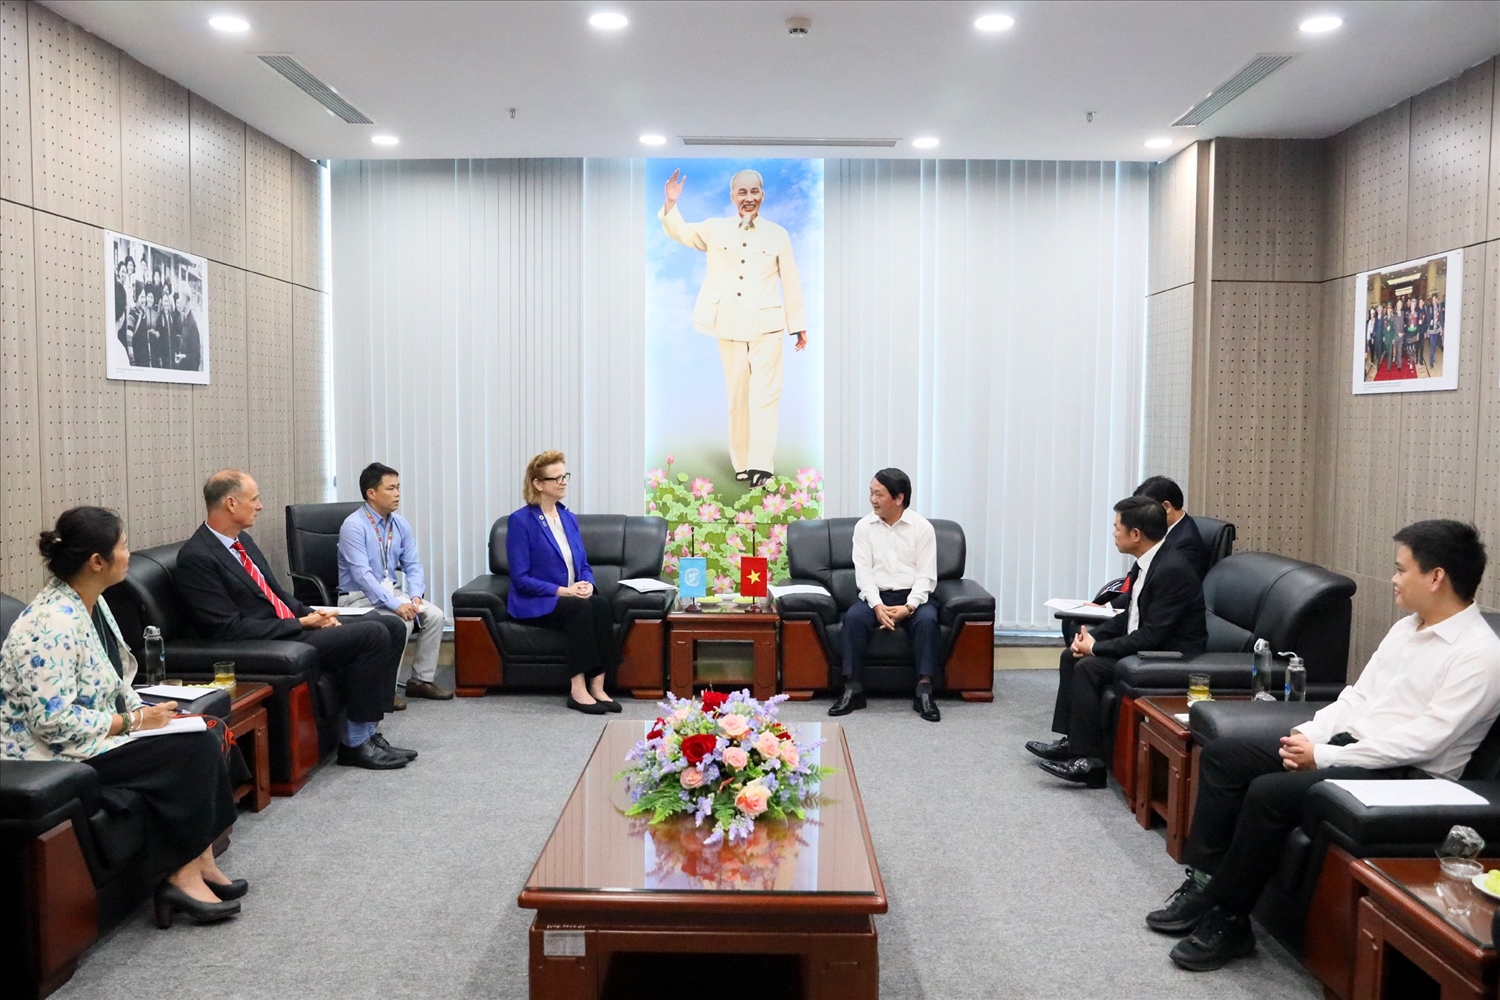 Bộ trưởng, Chủ nhiệm Hầu A Lềnh ghi nhận và cảm ơn sự hỗ trợ của UNDP, đặc biệt là cá nhân bà Caitlin Wiesen đối với sự phát triển của Việt Nam nói chung, vùng đồng bào DTTS của Việt Nam nói riêng trong nhiều năm qua